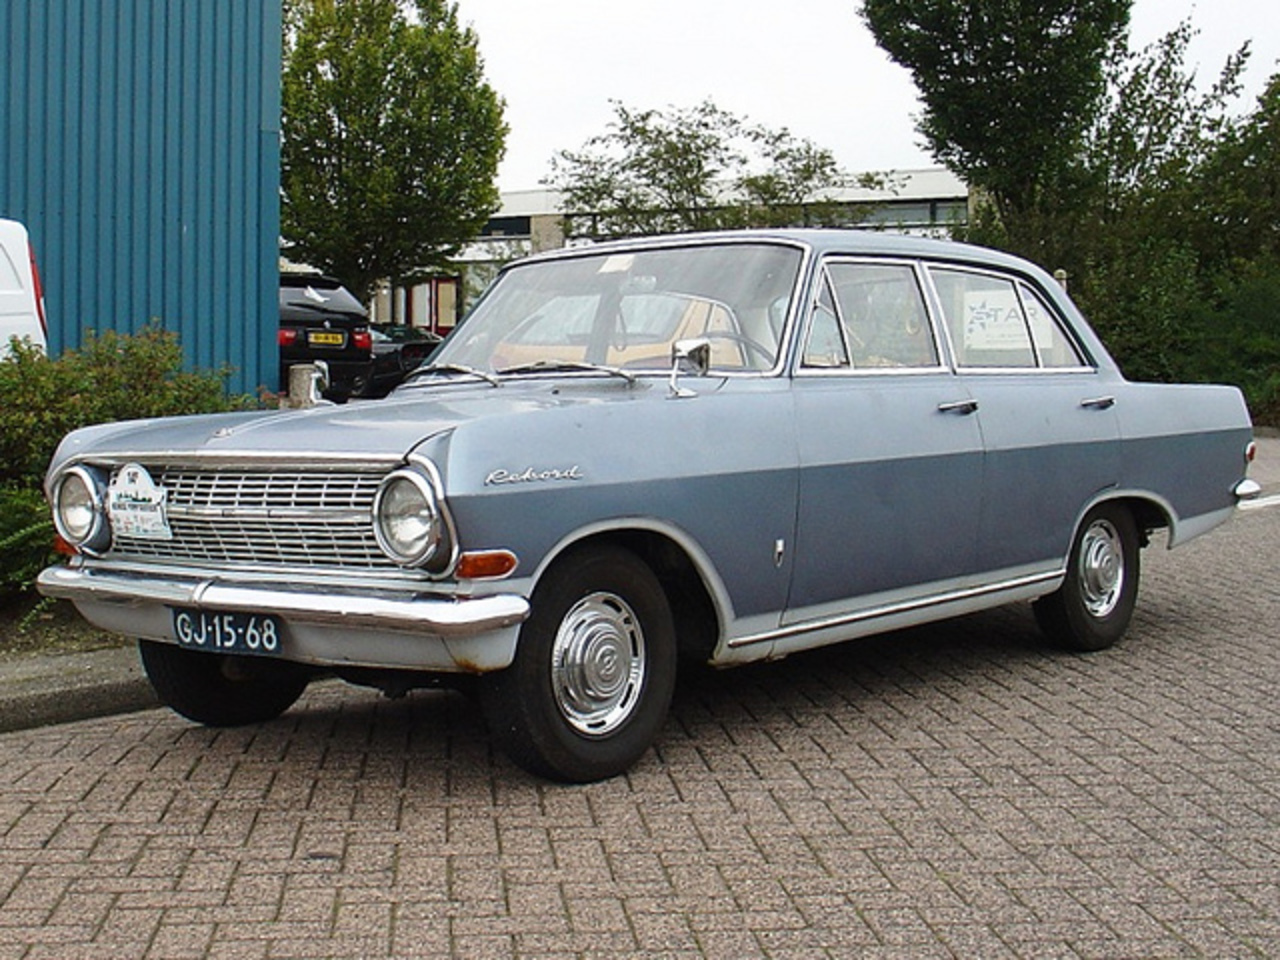 Opel Rekord 1700 1964 | Flickr - Photo Sharing!